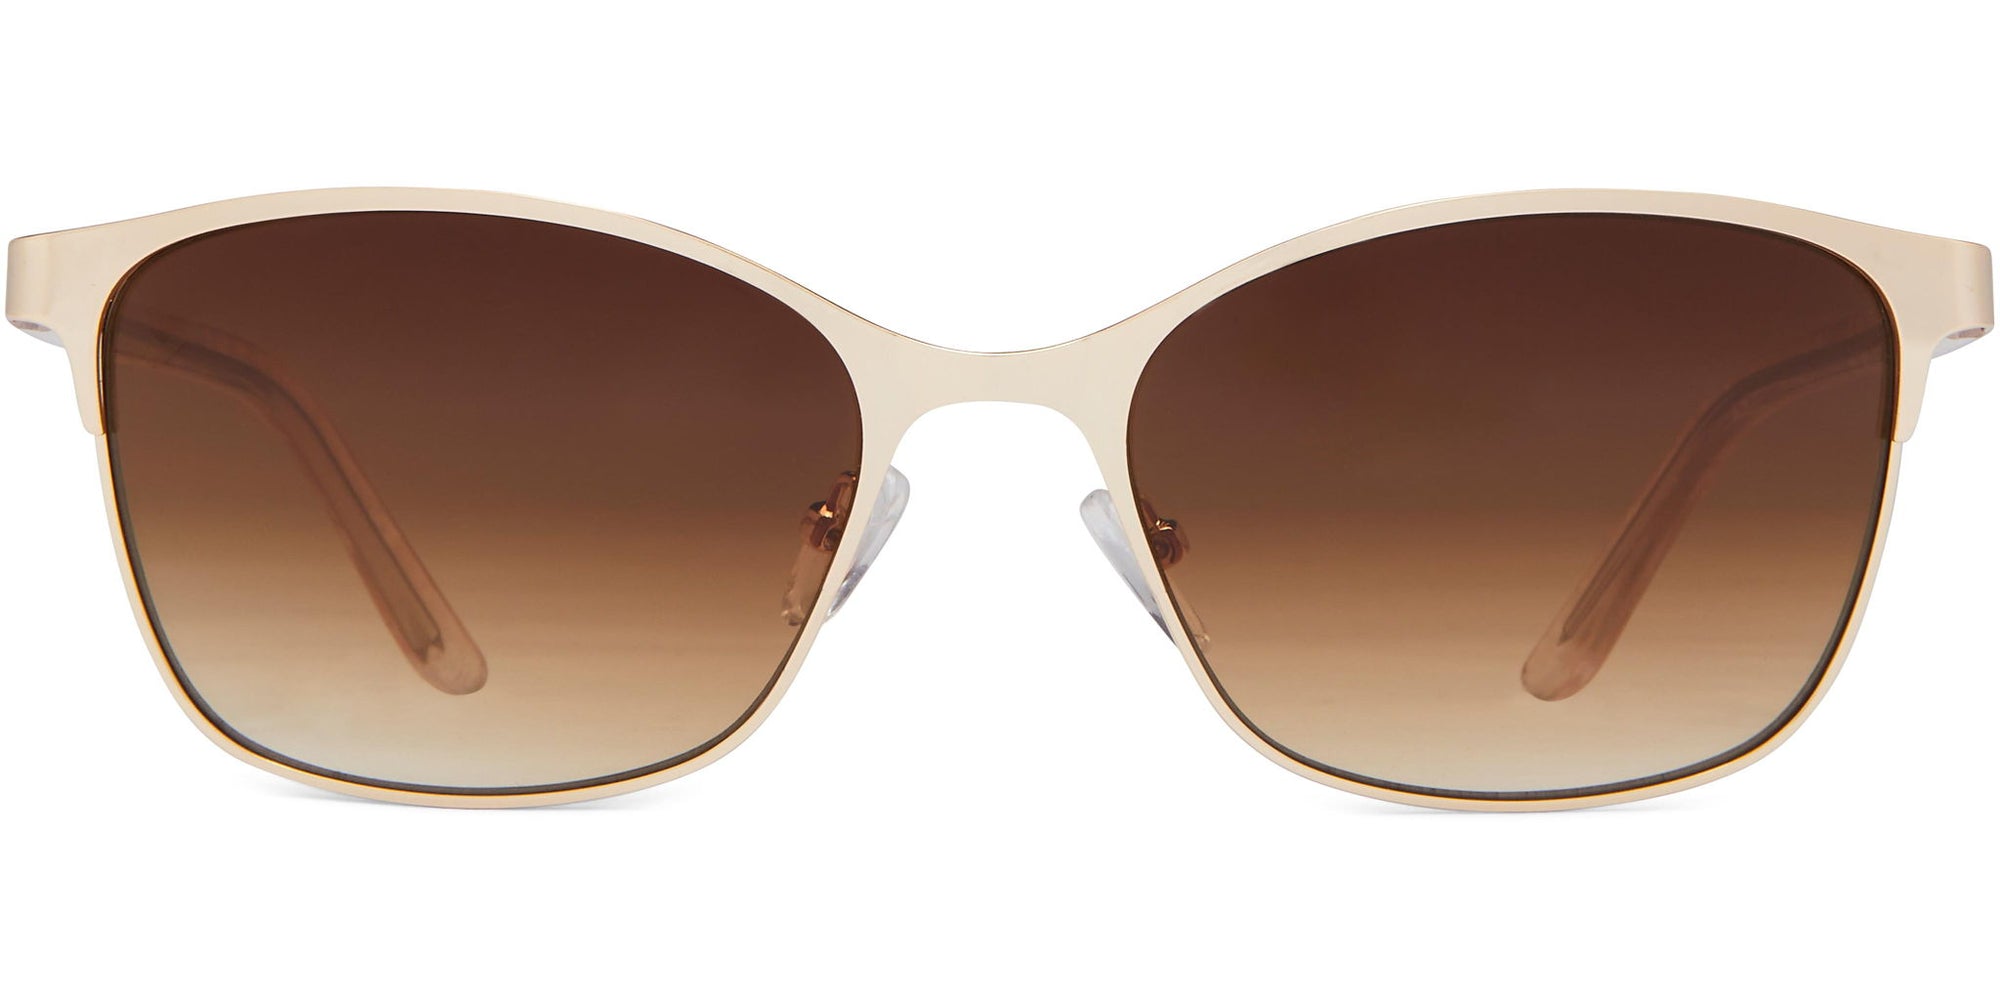 Chloe - Gold Metal/Brown Lens - Sunglasses